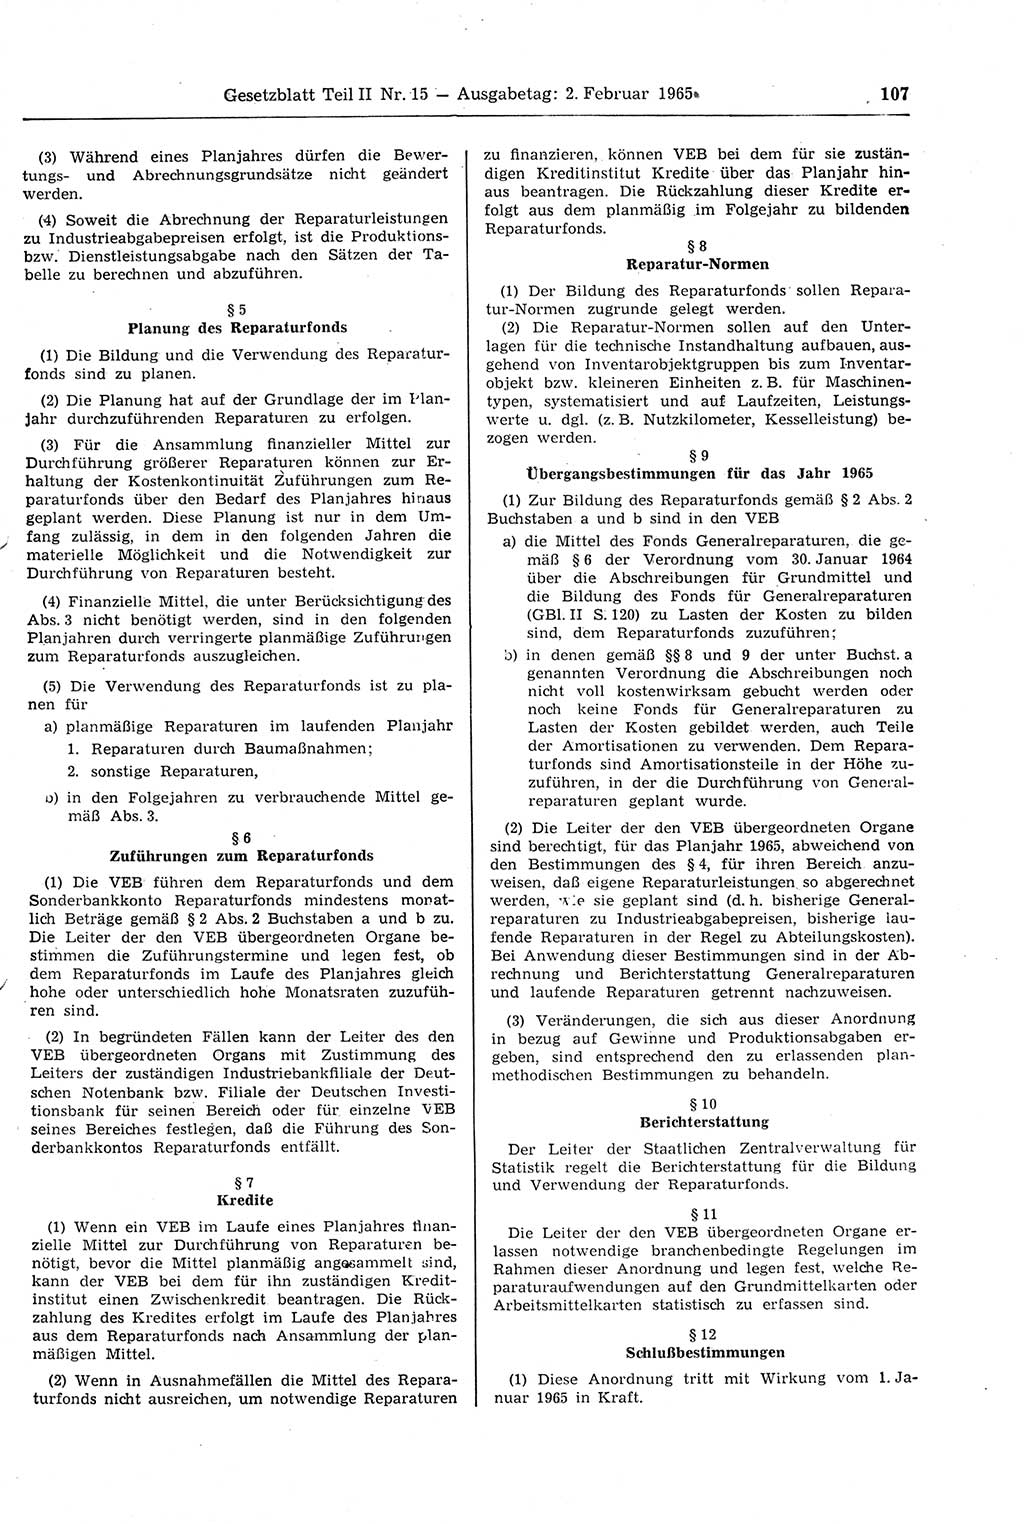 Gesetzblatt (GBl.) der Deutschen Demokratischen Republik (DDR) Teil ⅠⅠ 1965, Seite 107 (GBl. DDR ⅠⅠ 1965, S. 107)